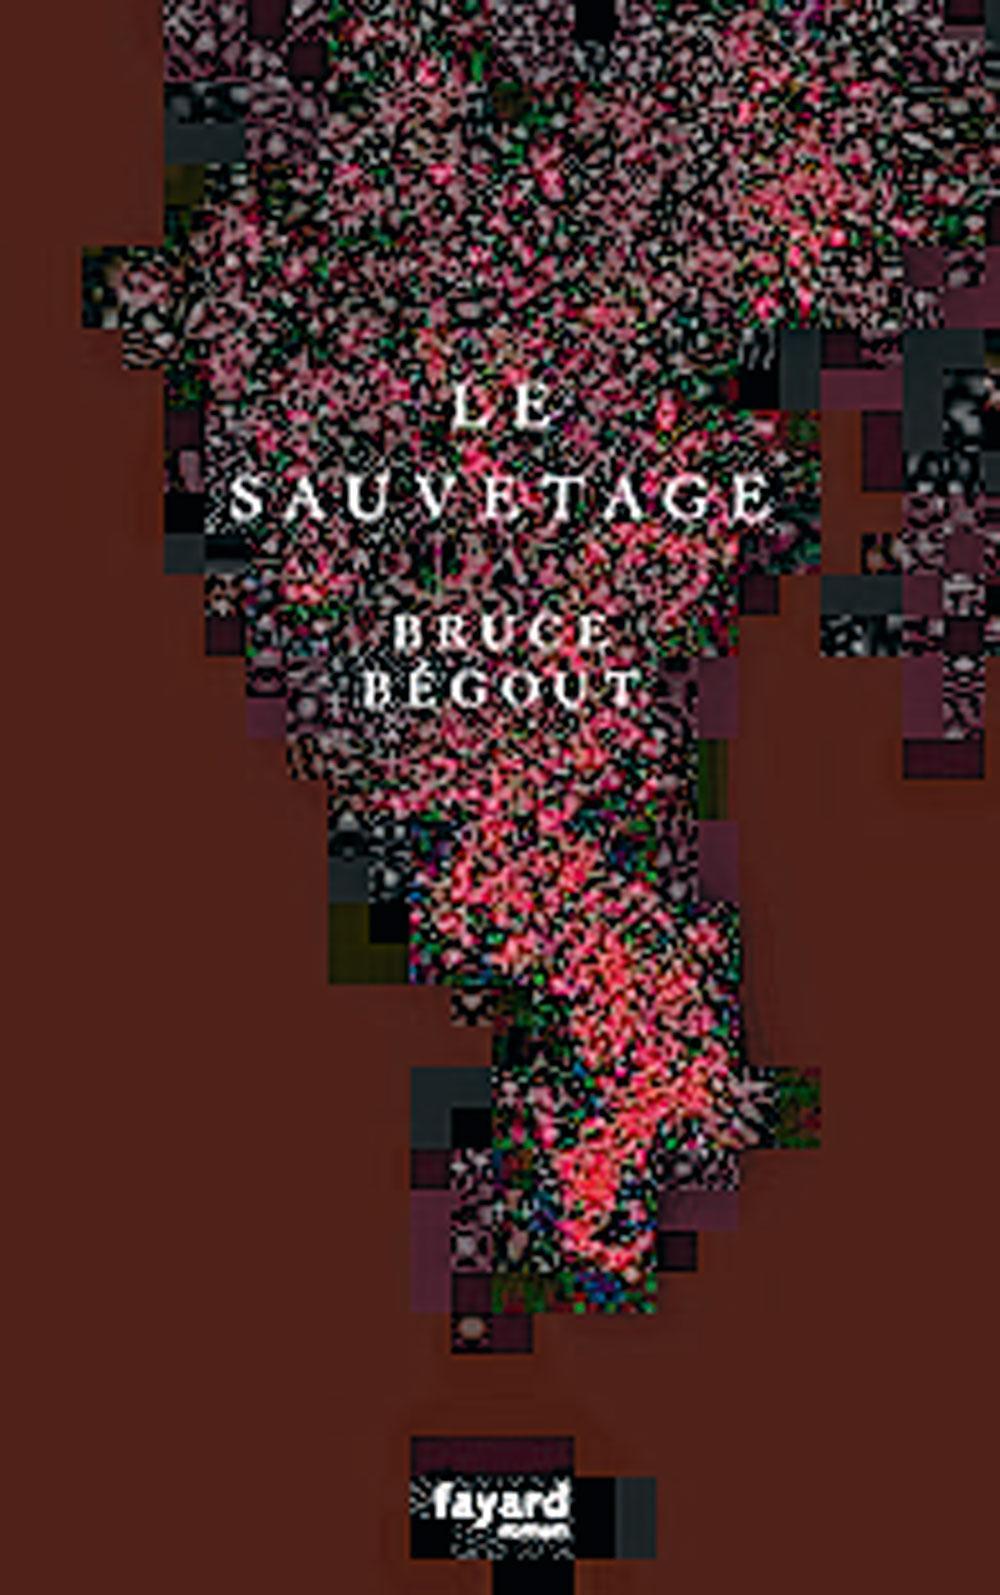 (2) Le Sauvetage, Bruce Bégout, éd. Fayard, 368 p.